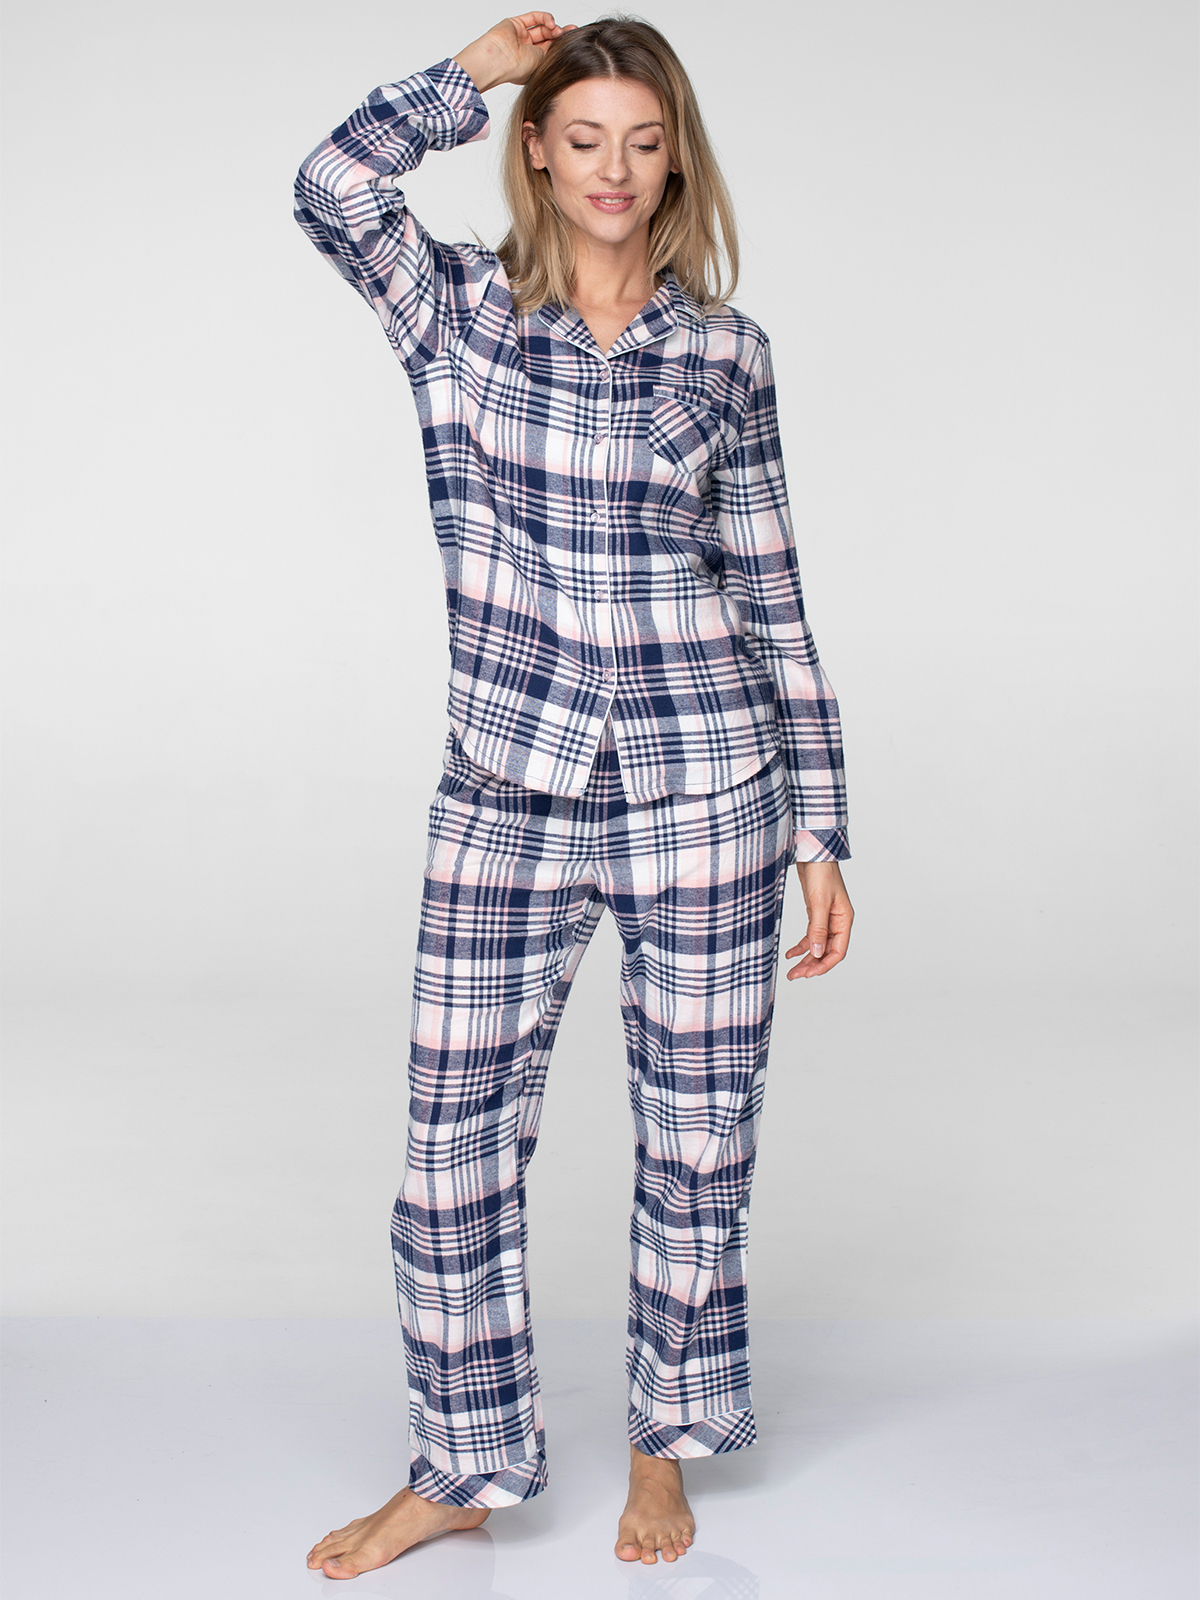 Купить Пижаму Женскую В Интернет Магазине